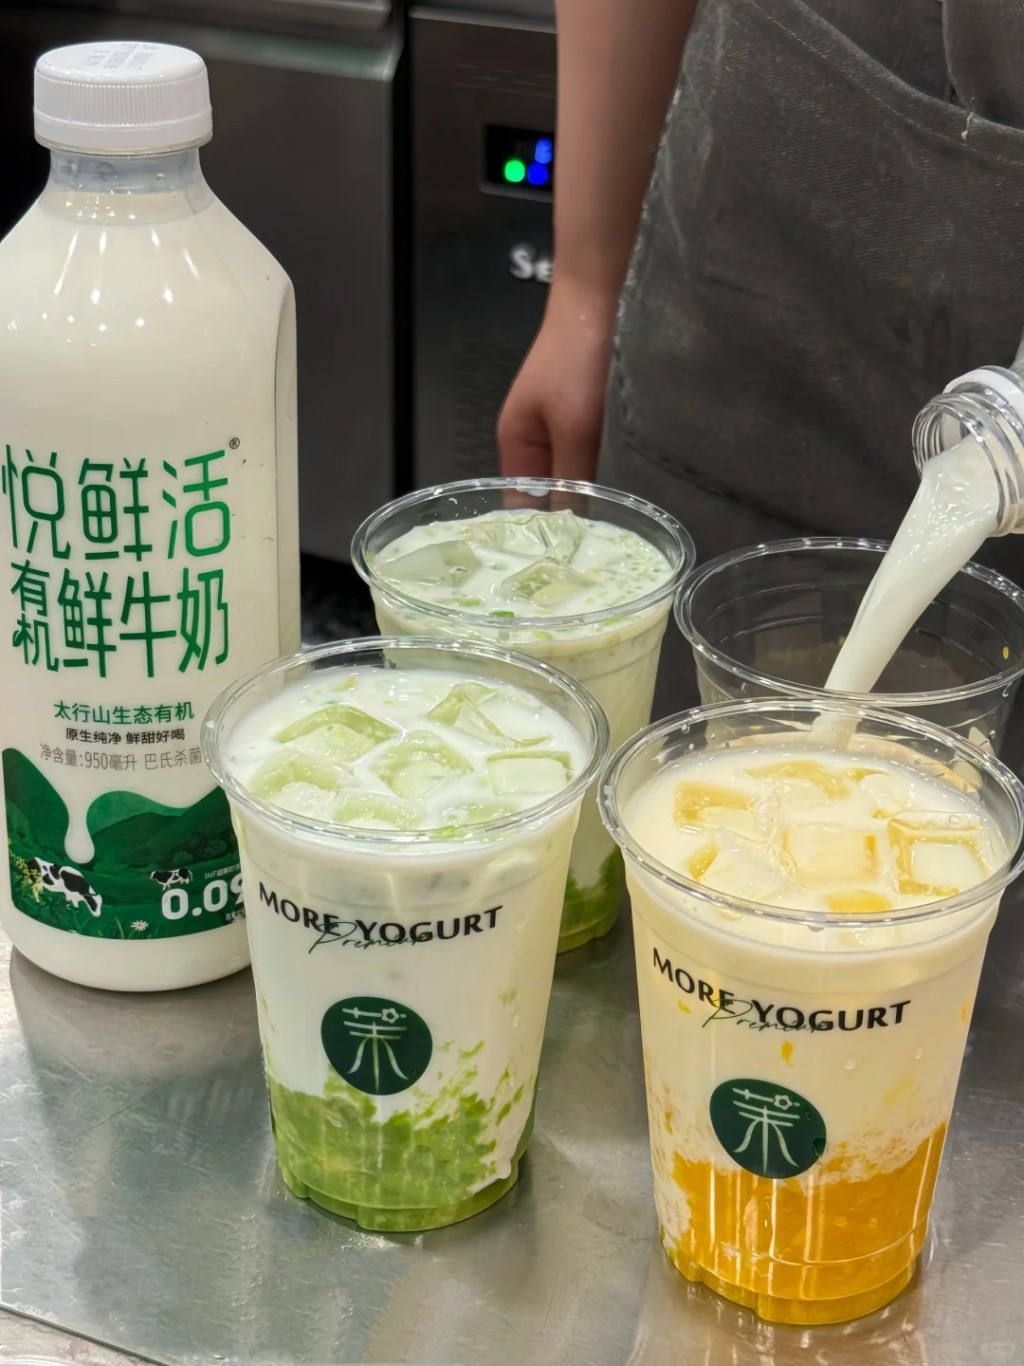 「茉酸奶」在内地市场颇受欢迎，标榜使用新鲜水果原料。小红书